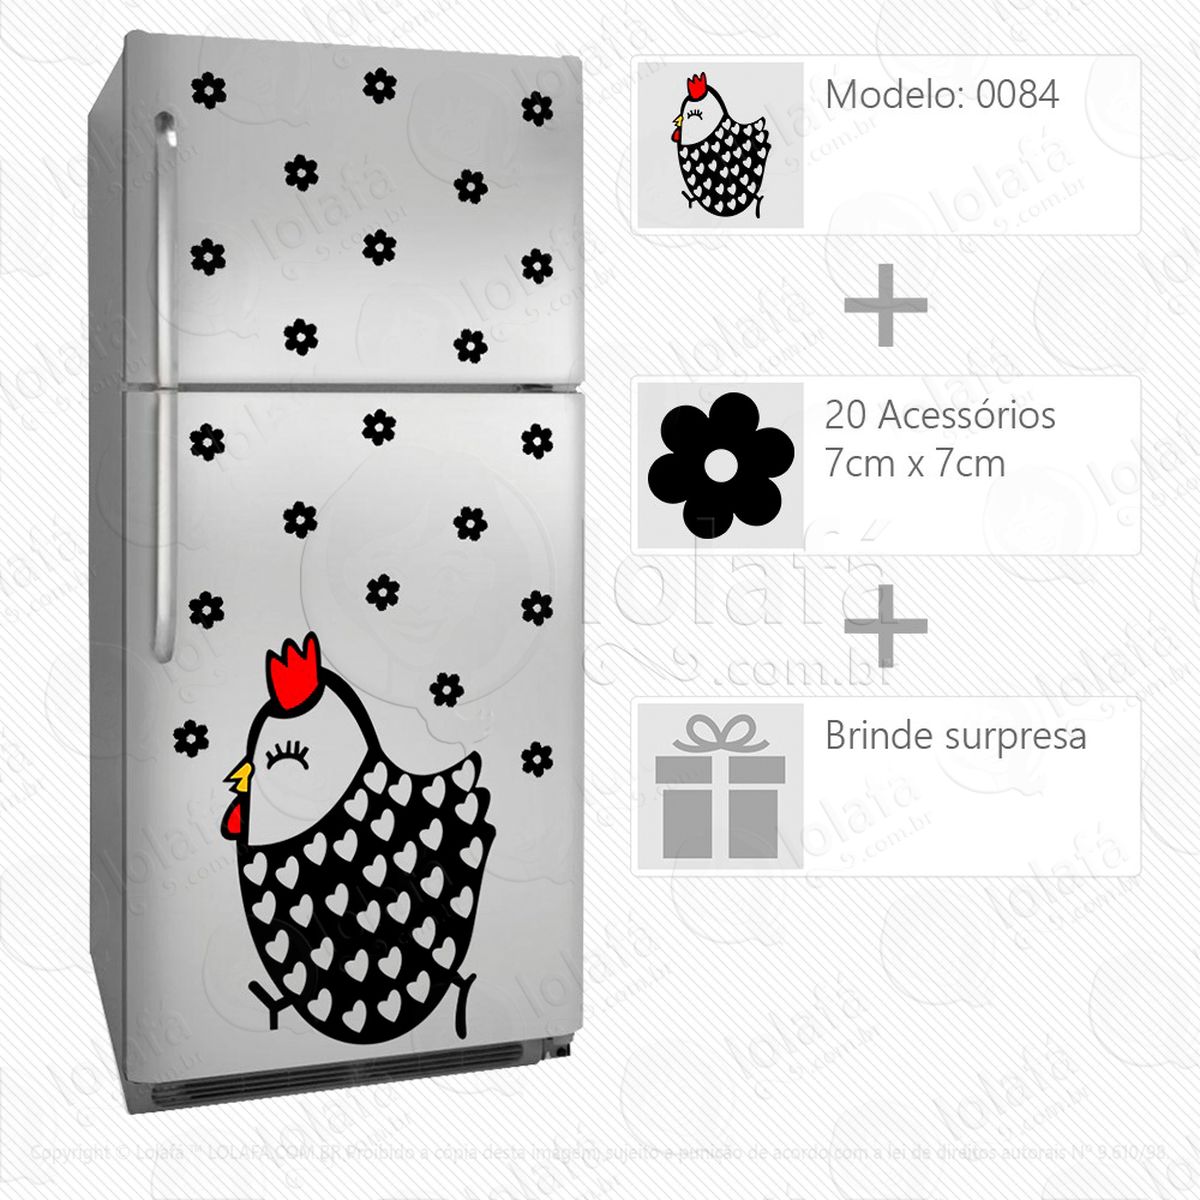 galinha adesivo para geladeira e frigobar - mod:84